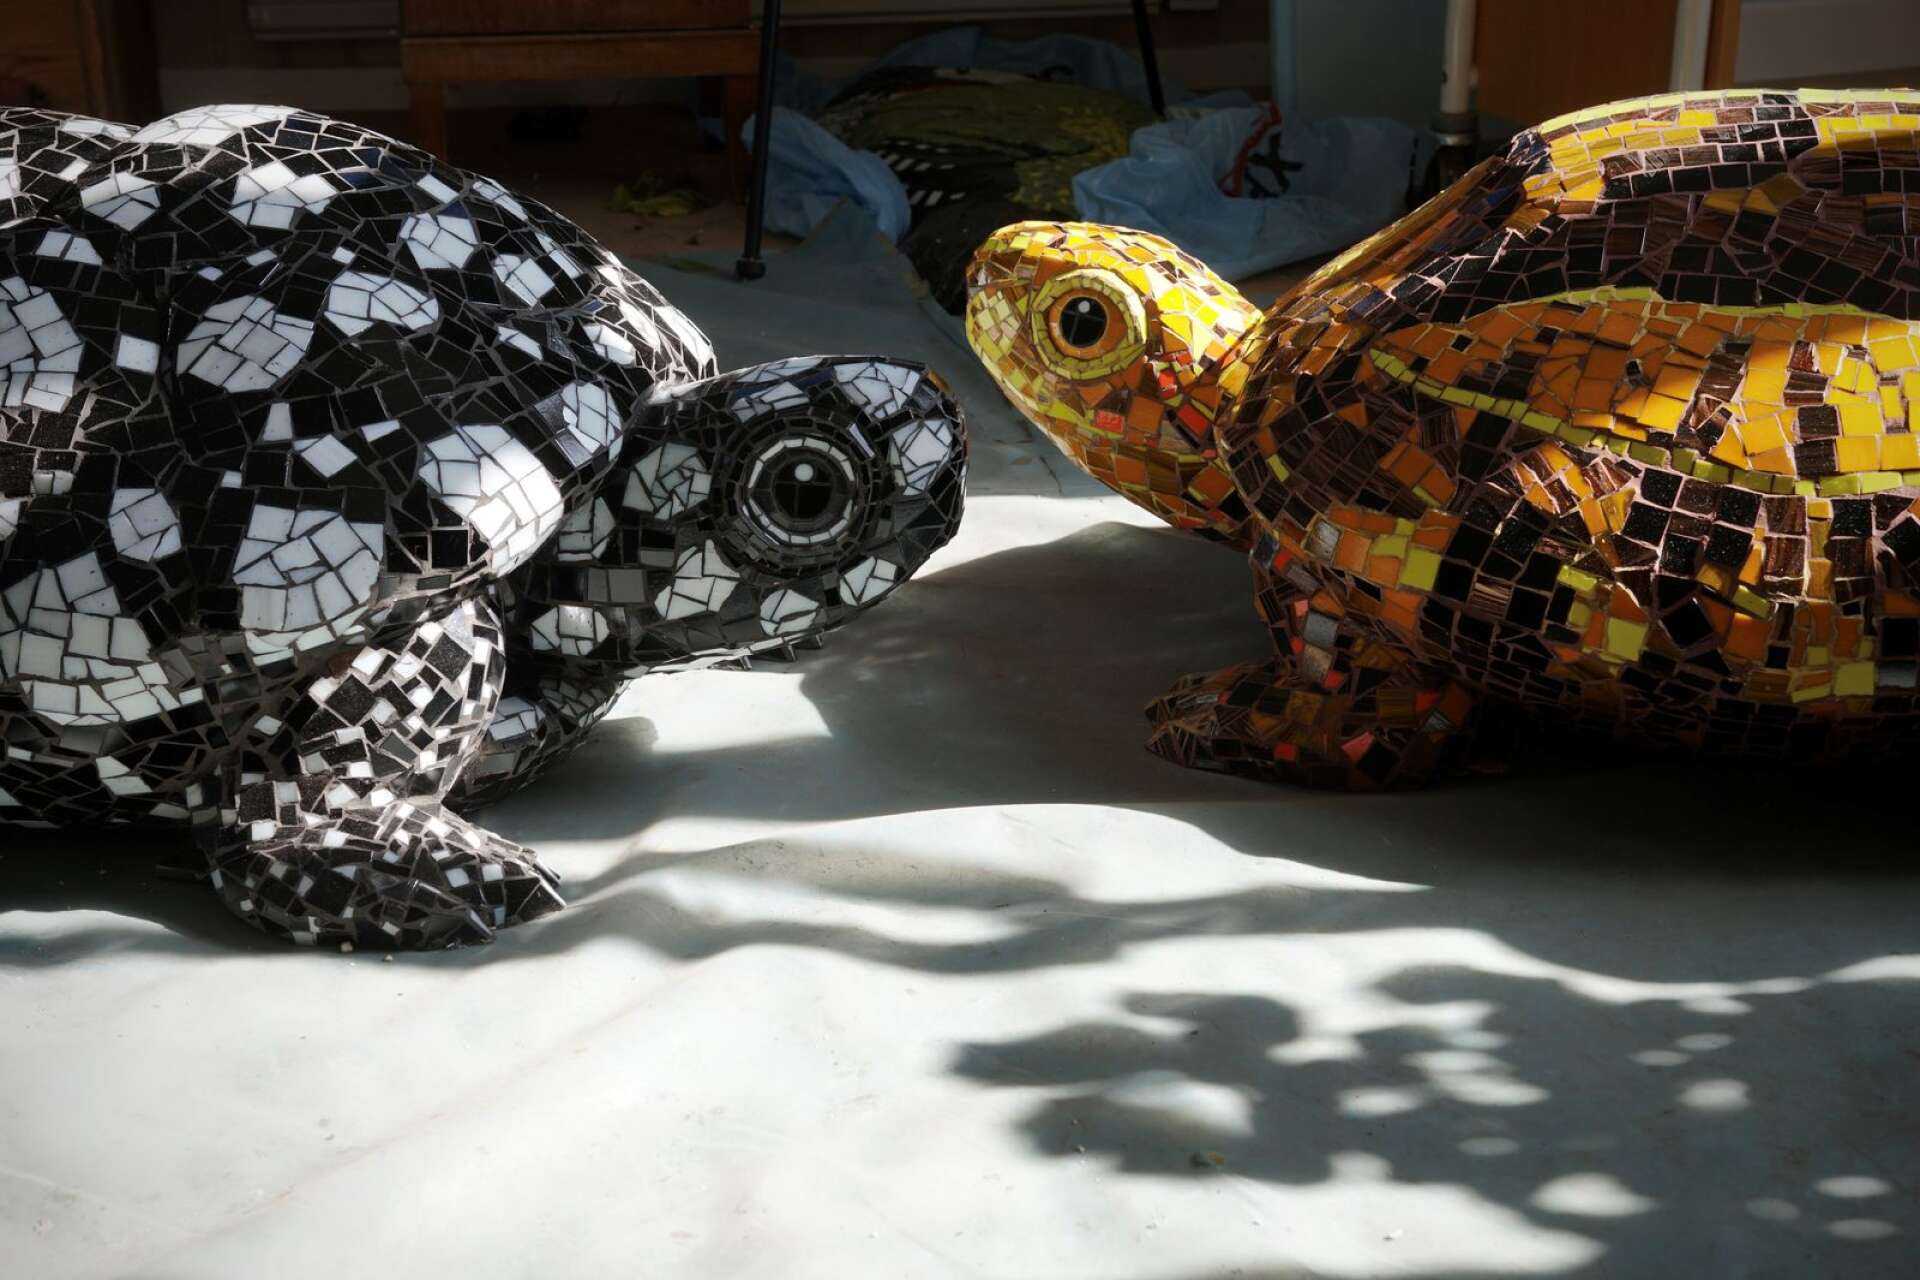 ”Det blir ett härligt ljusspel och när man går runt djuren så glimrar de som diamanter”, säger Ellen Ljungqvists om sina mosaiksköldpaddor.